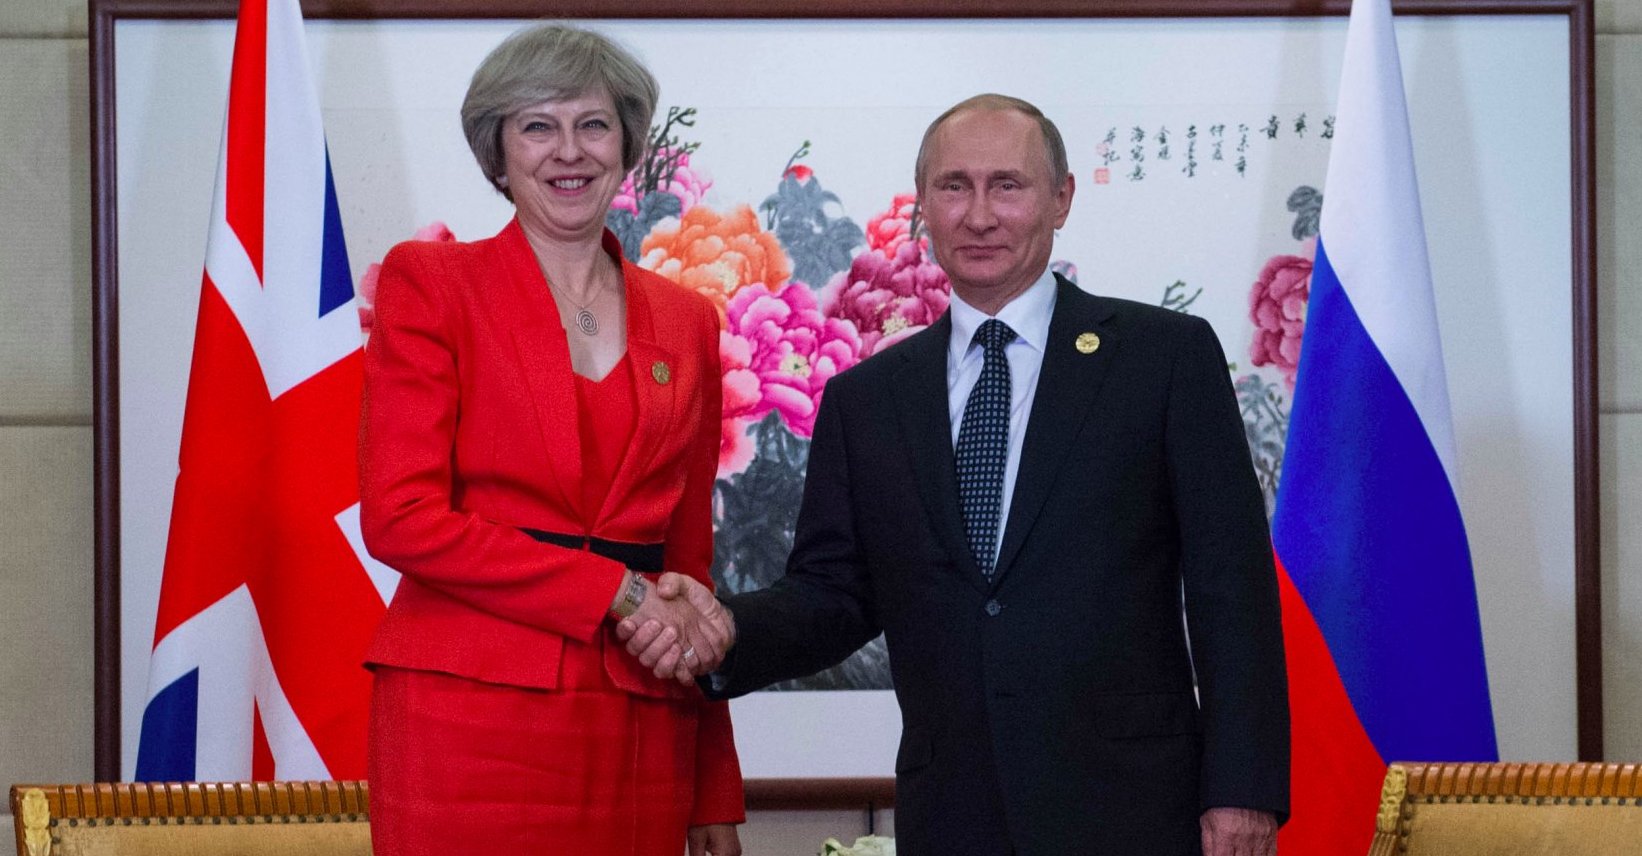 Η Βρετανία οδηγεί τις σχέσεις με τη Ρωσία στα άκρα: Ταξιδιωτική οδηγία και δέσμευση περιουσιακών στοιχείων!